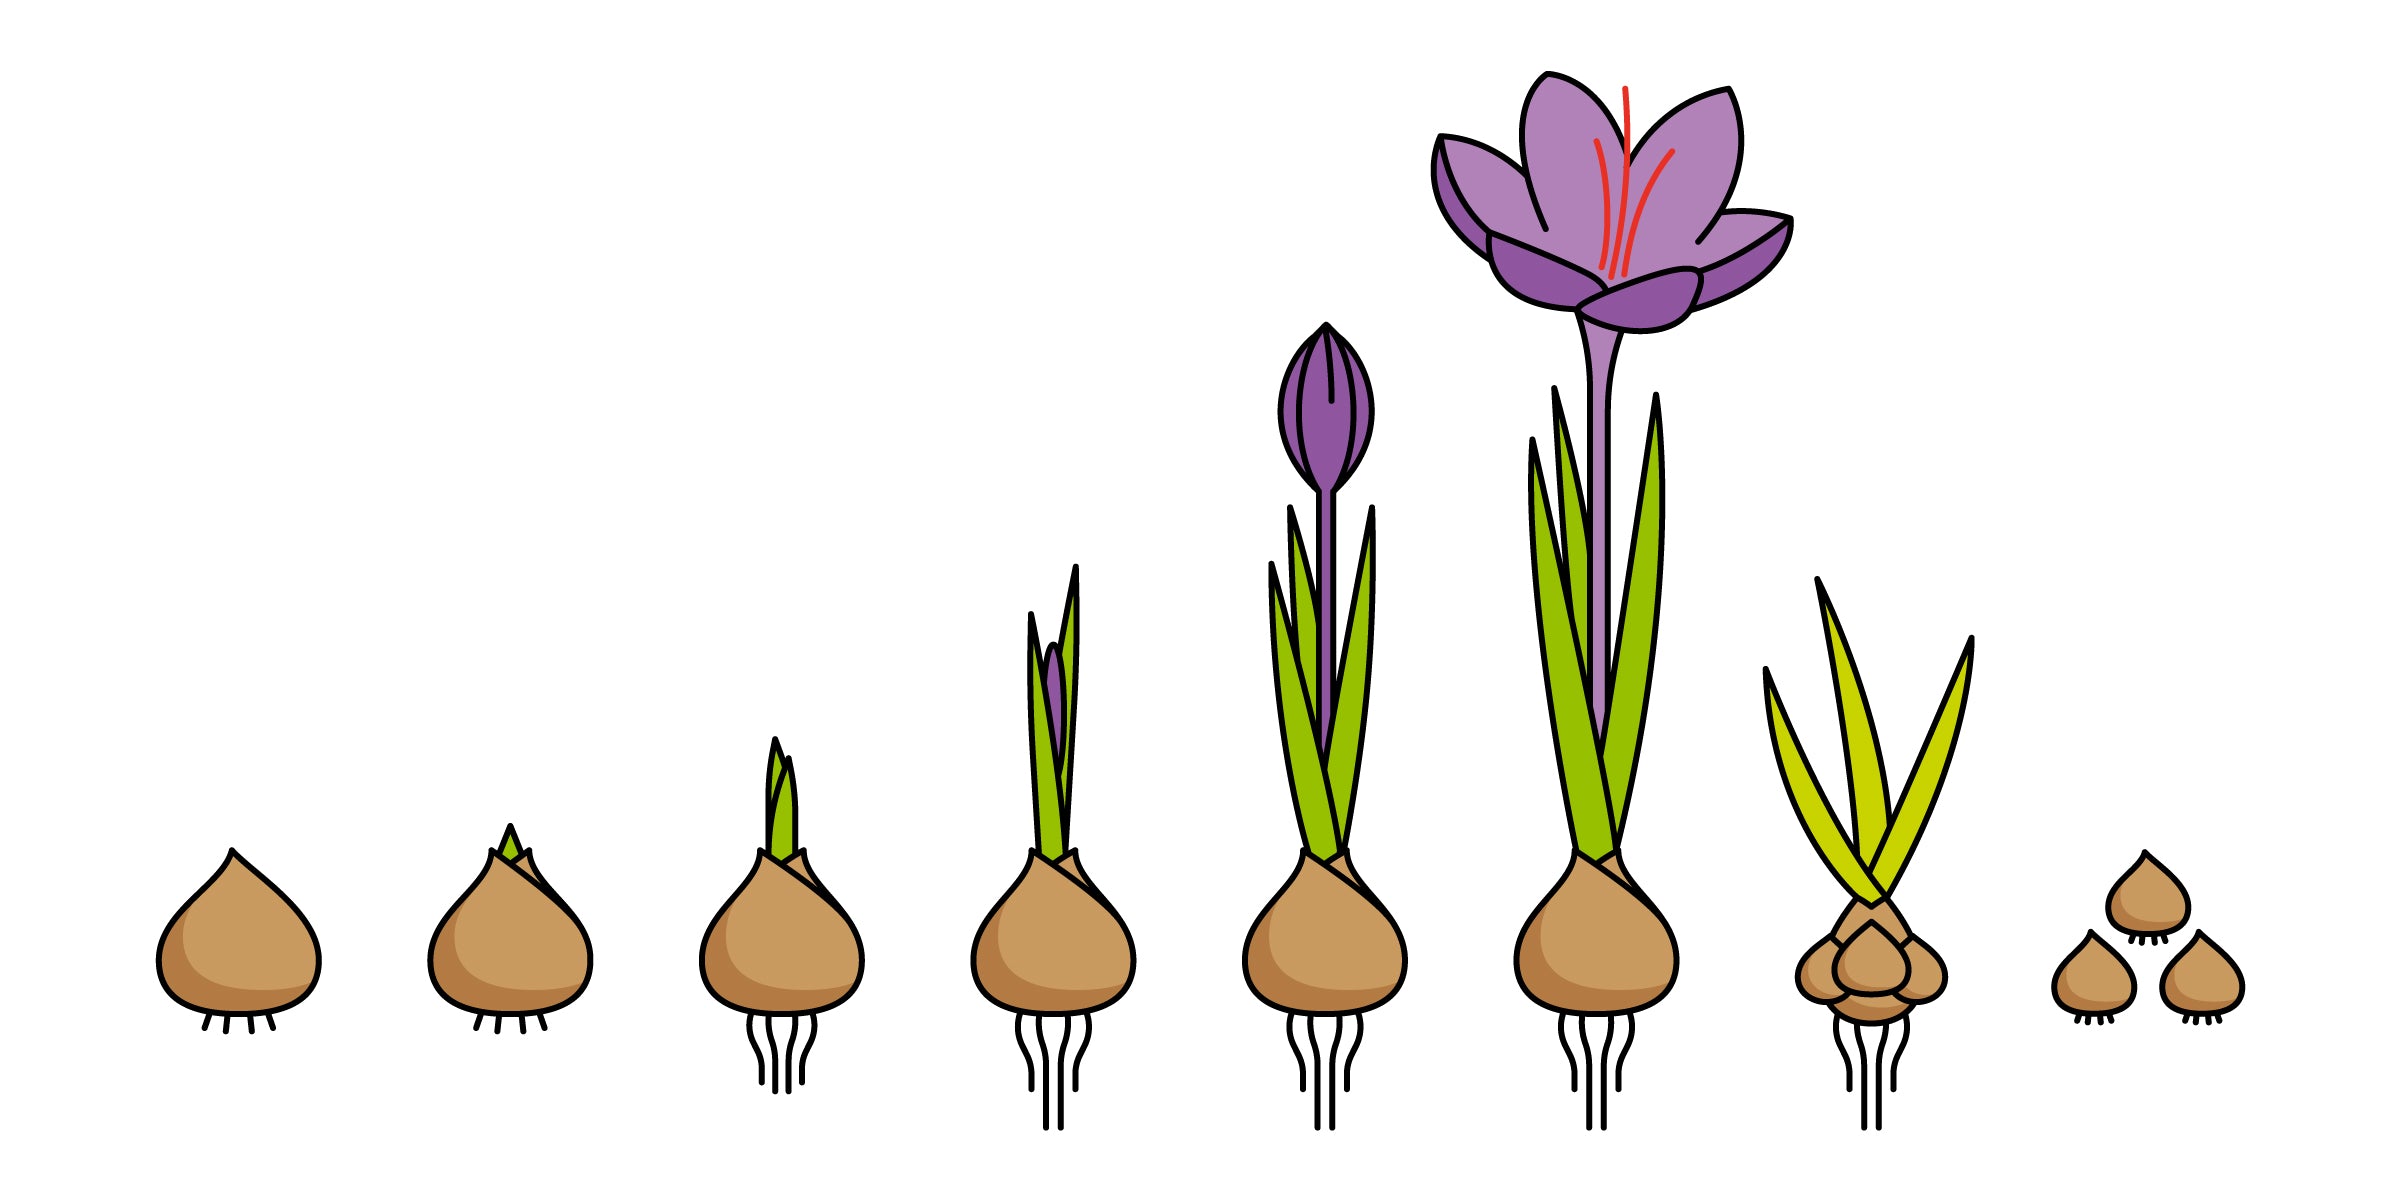 Saffron Crocus sativus reproduction